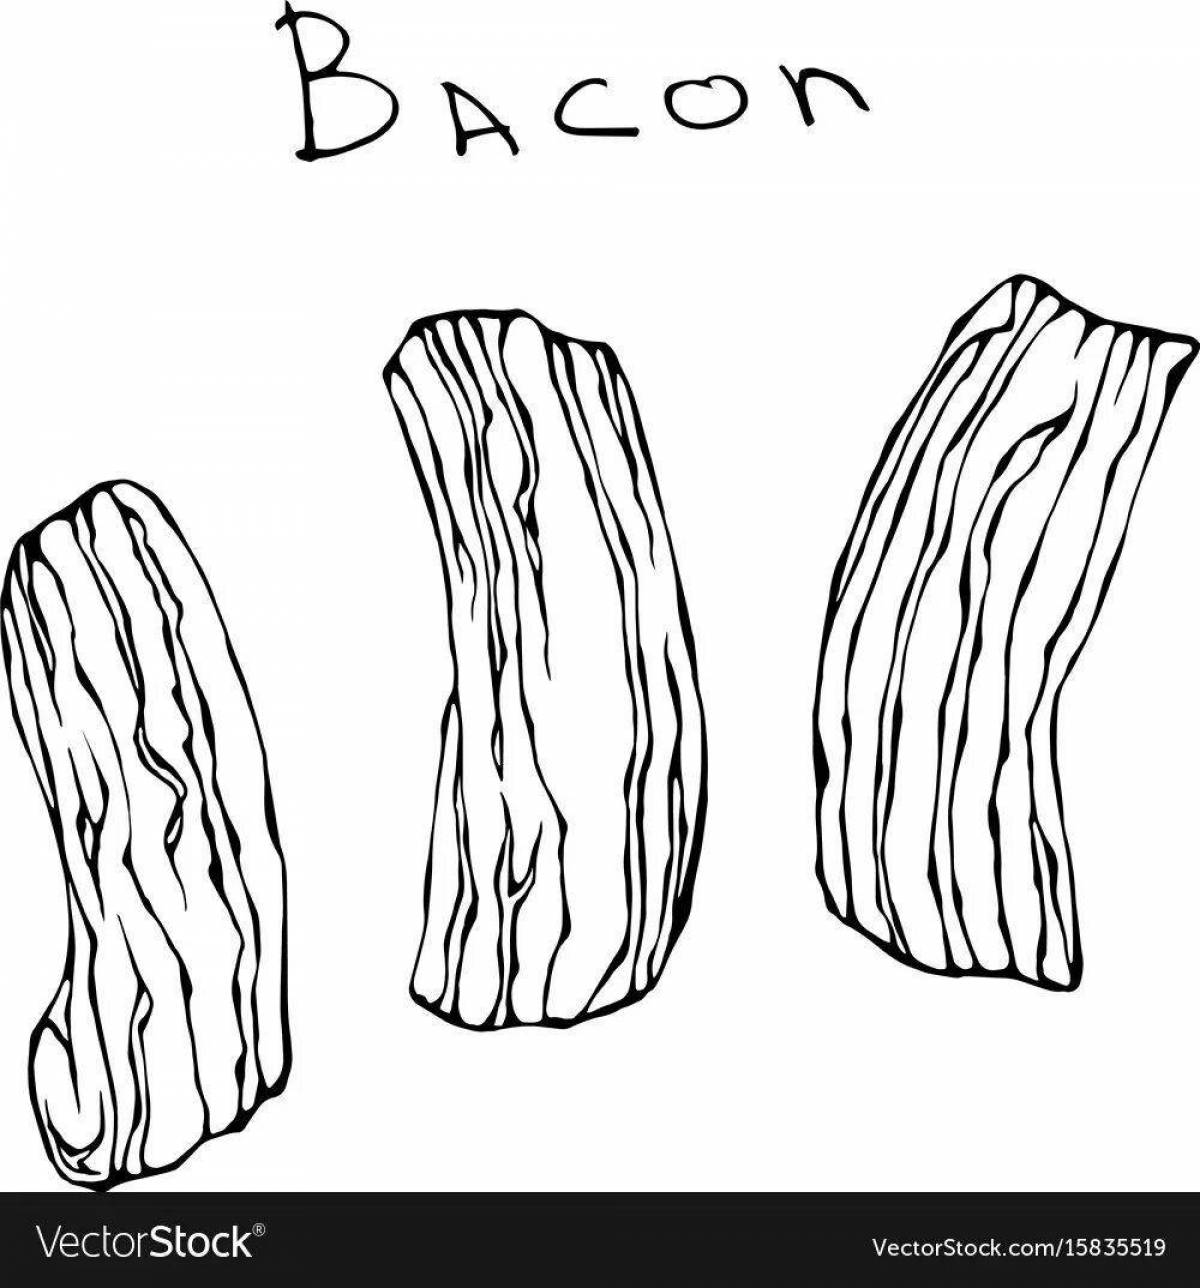 Delicious bacon coloring page